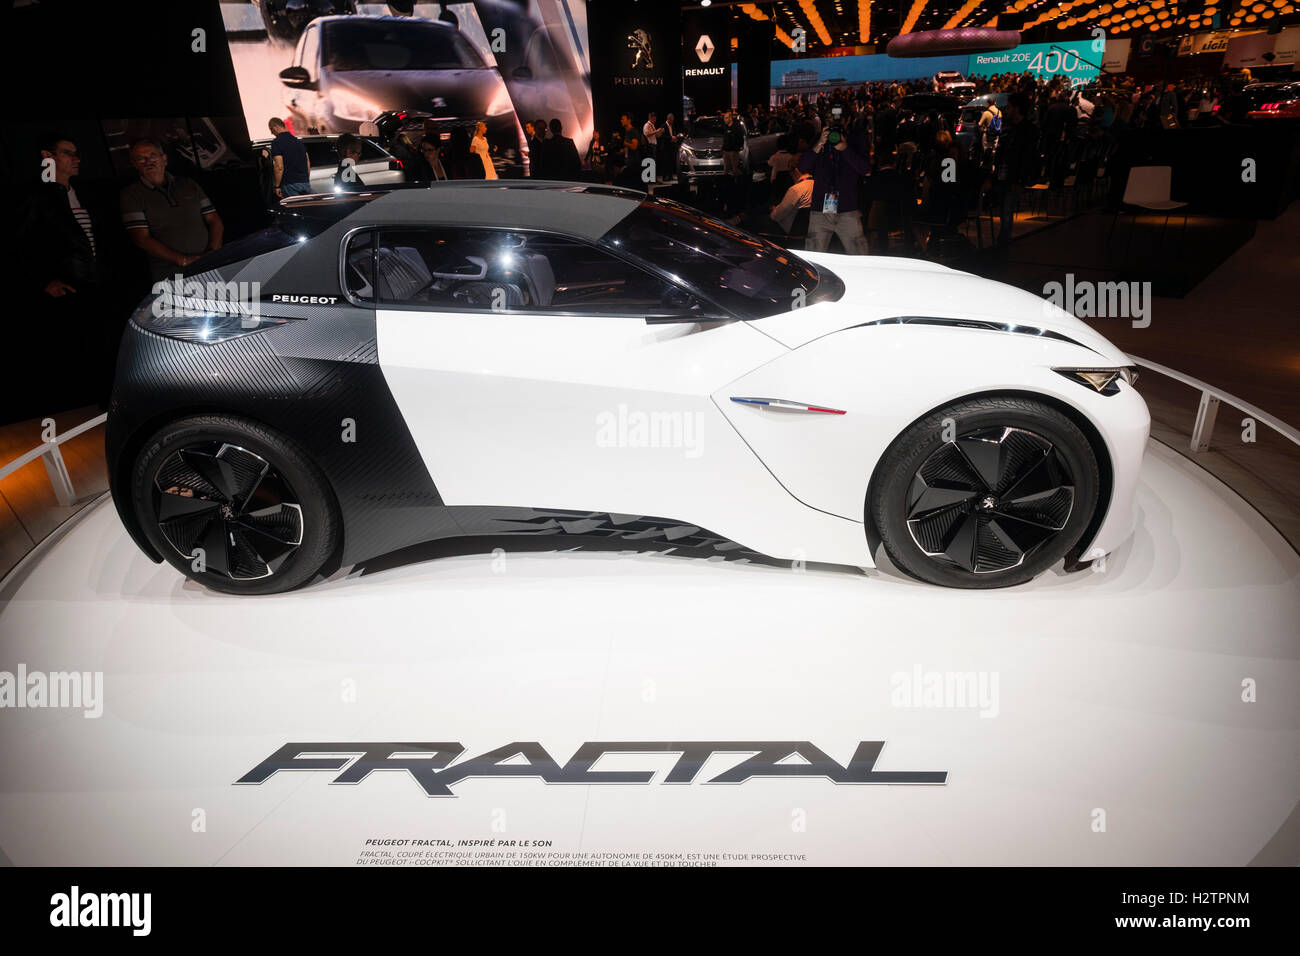 Peugeot concept car eléctrico Fractal en Paris Motor Show 2016 Foto de stock